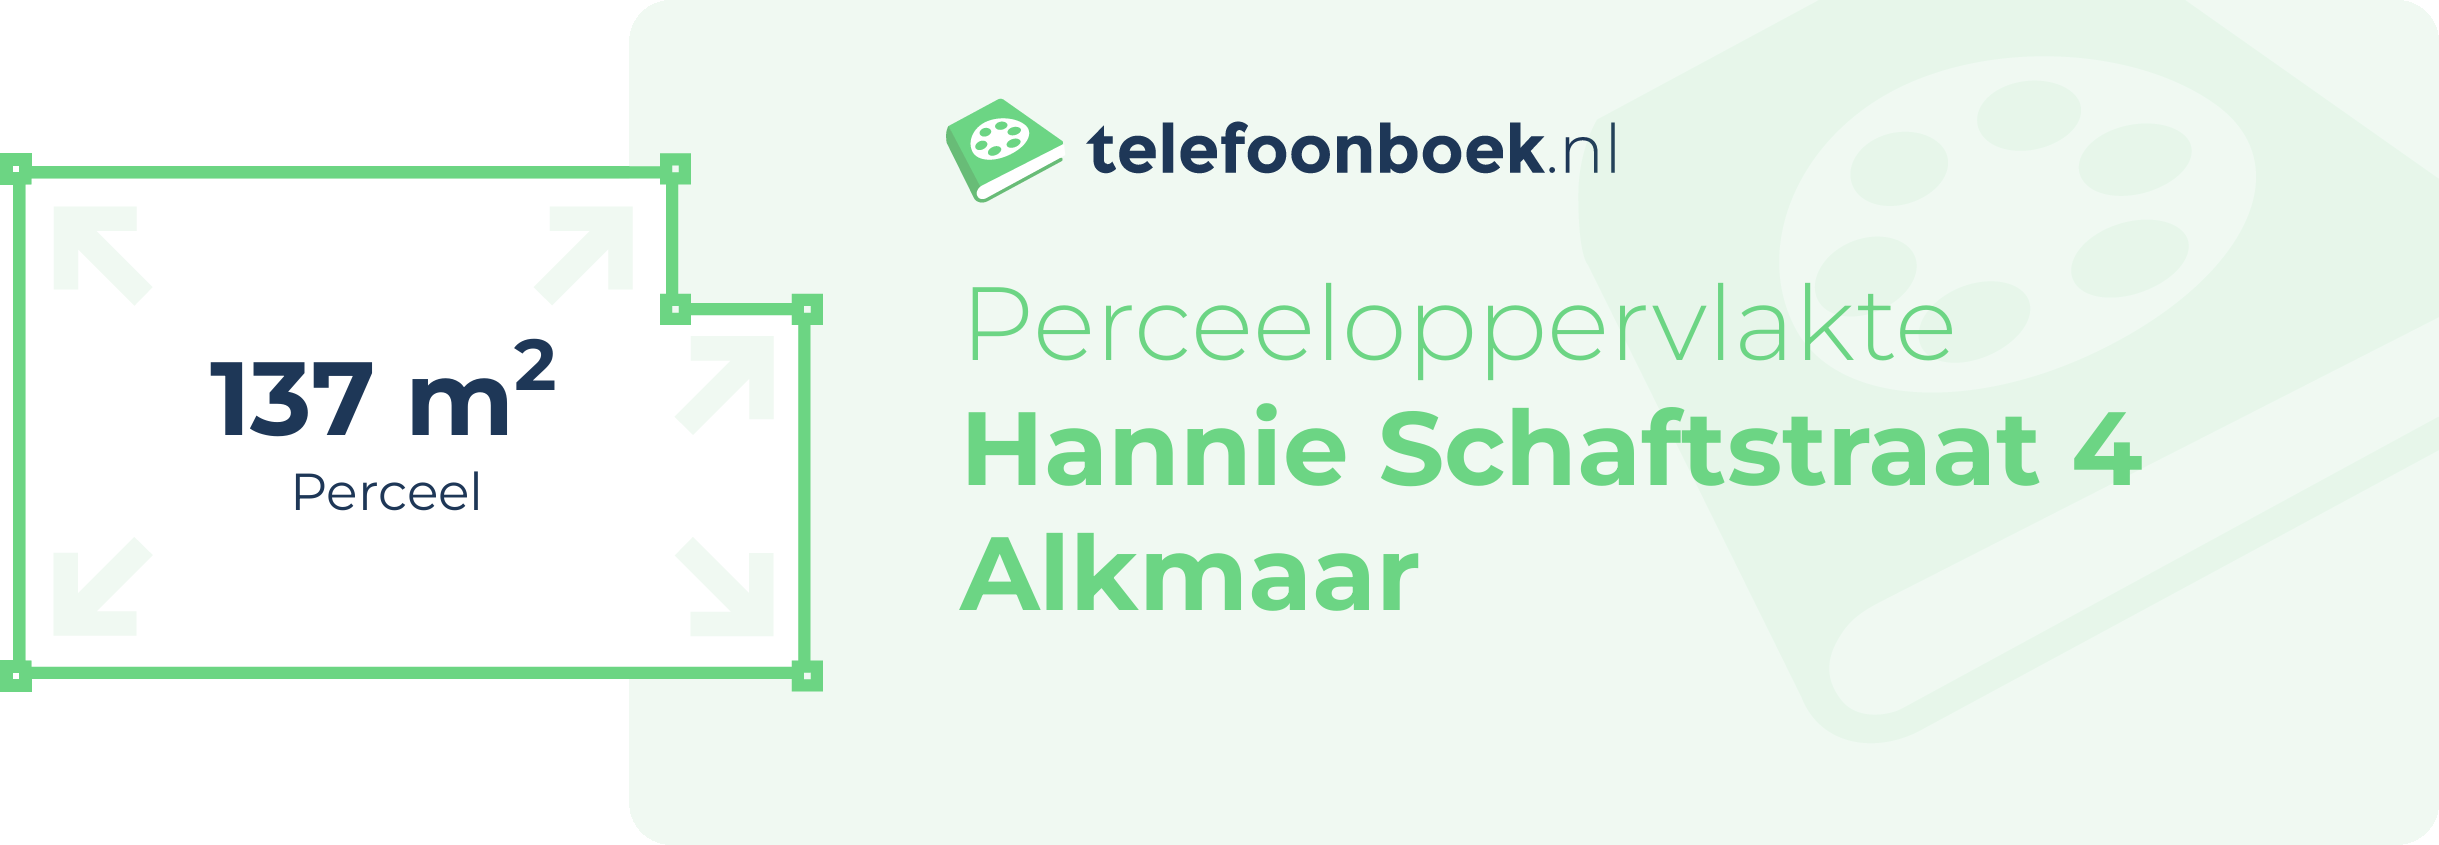 Perceeloppervlakte Hannie Schaftstraat 4 Alkmaar